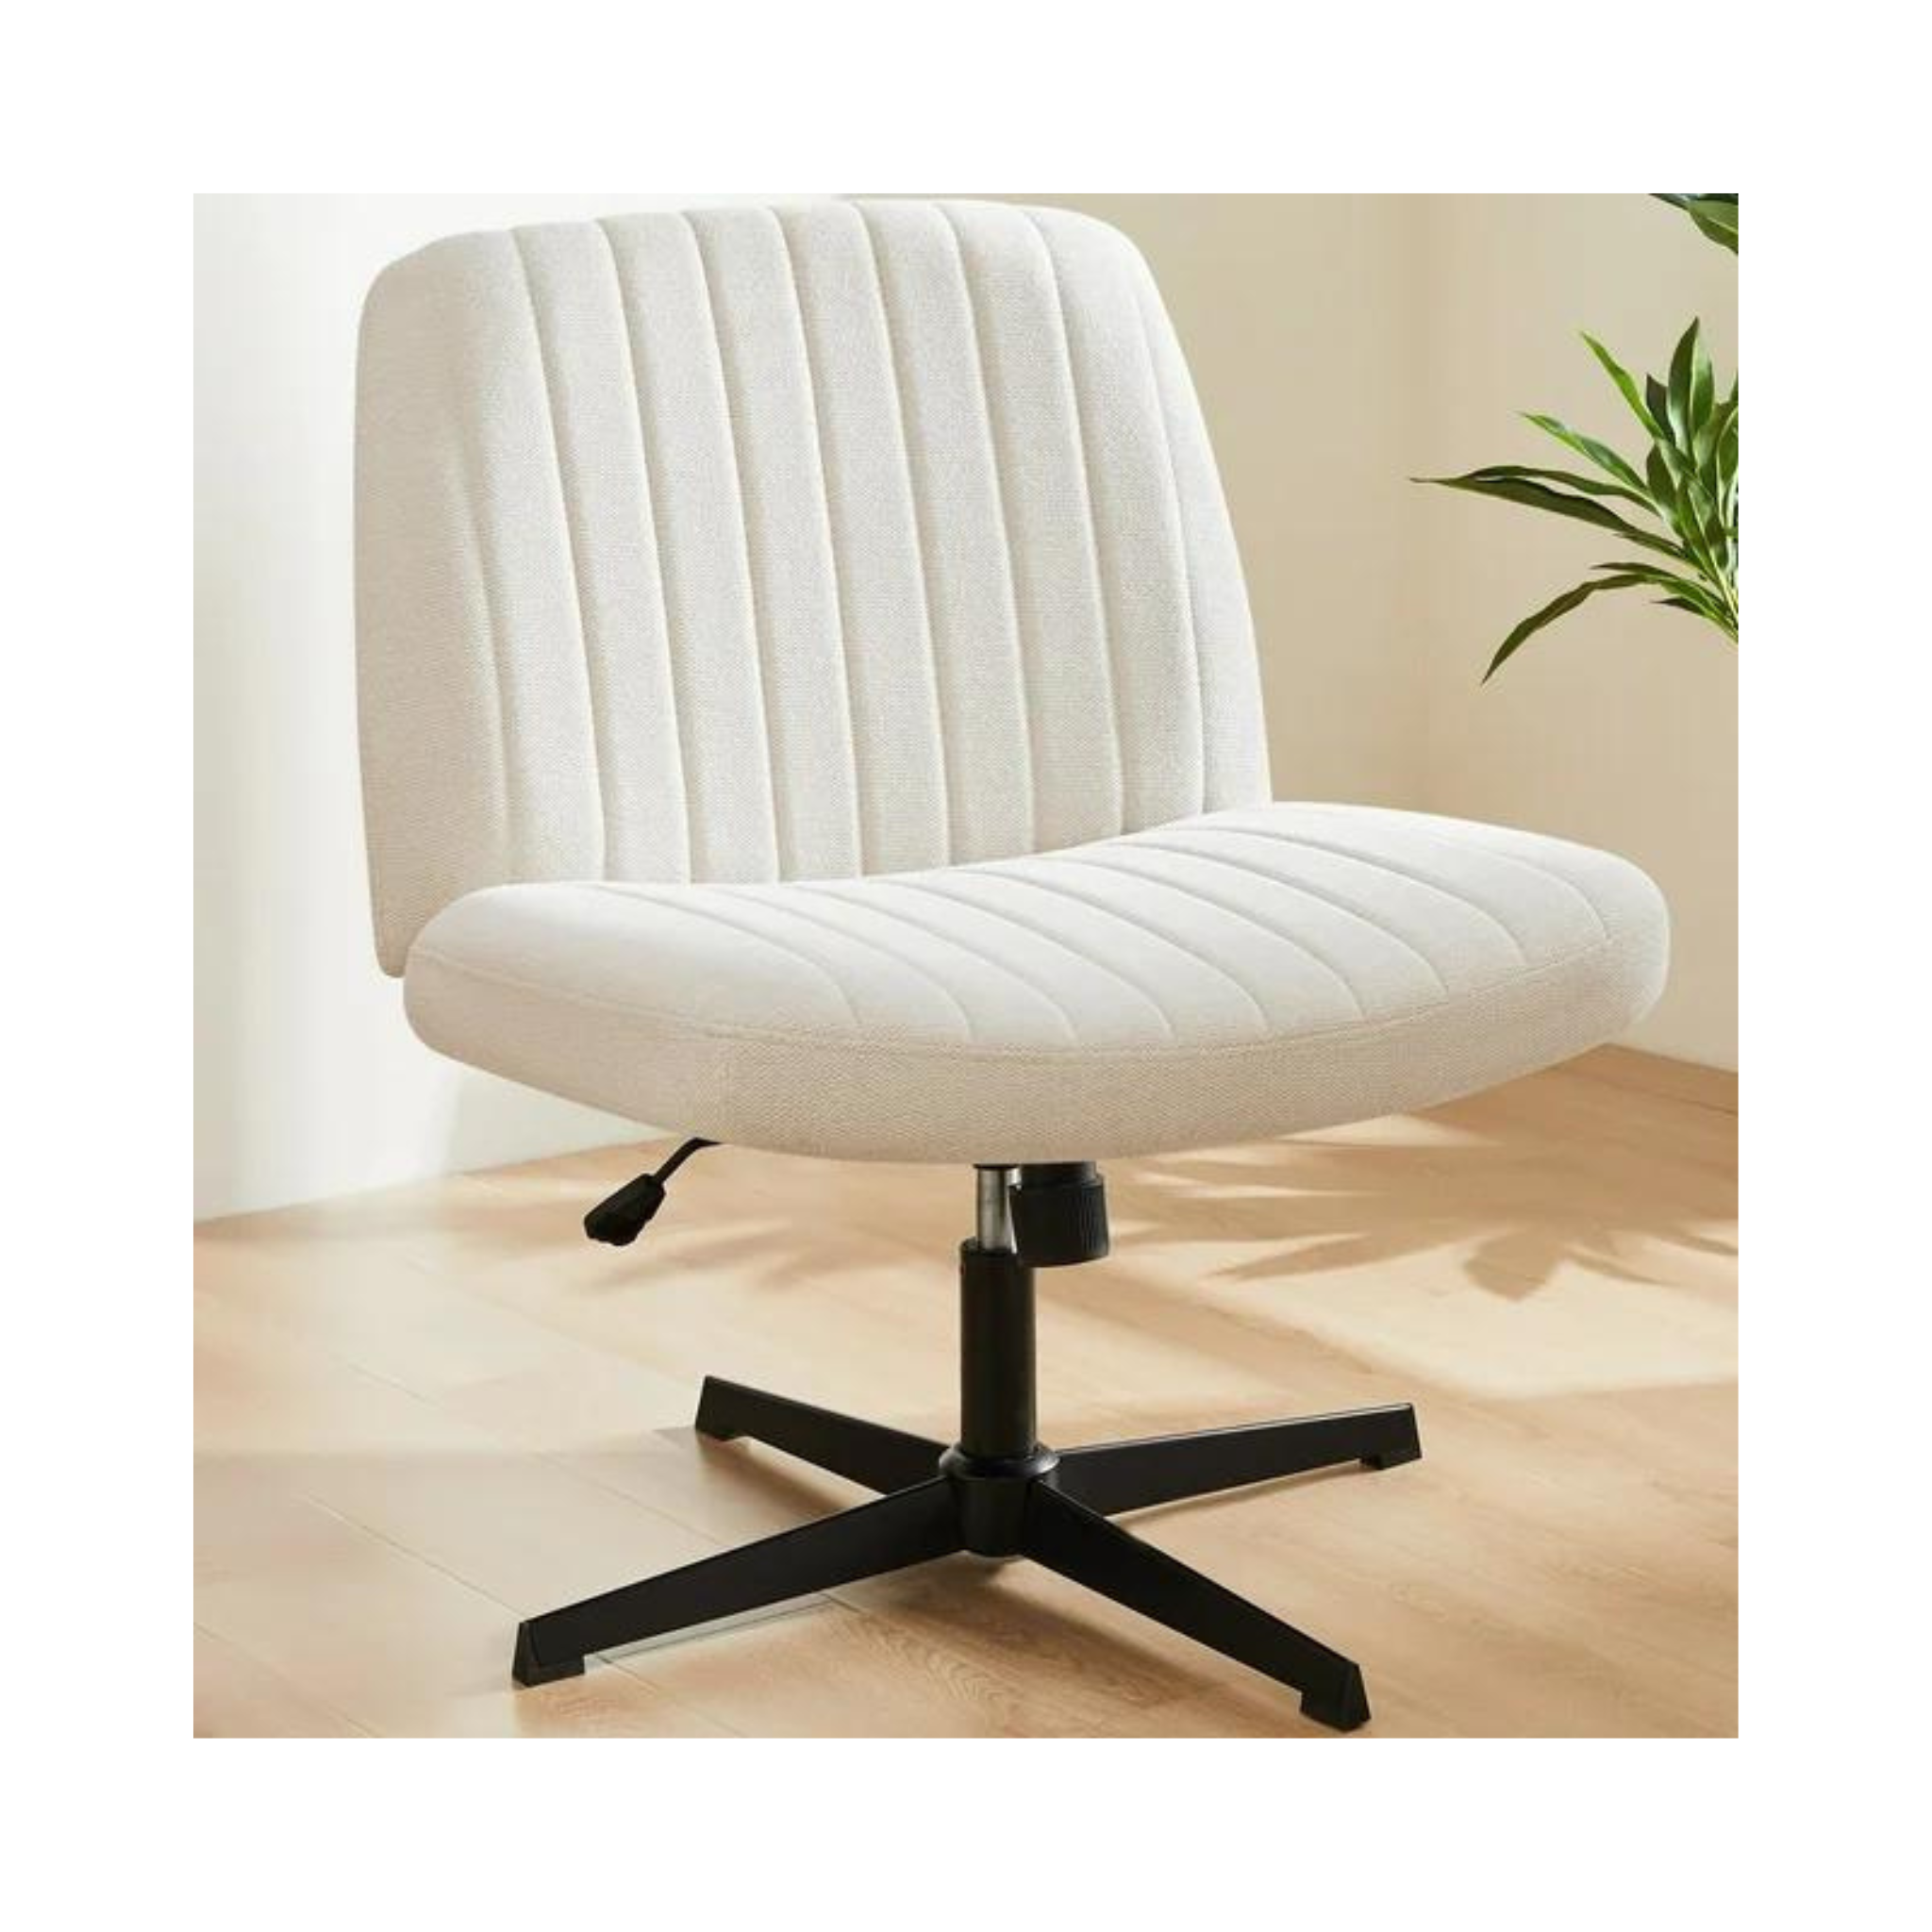 EDX Office Chair Armless Desk Chair